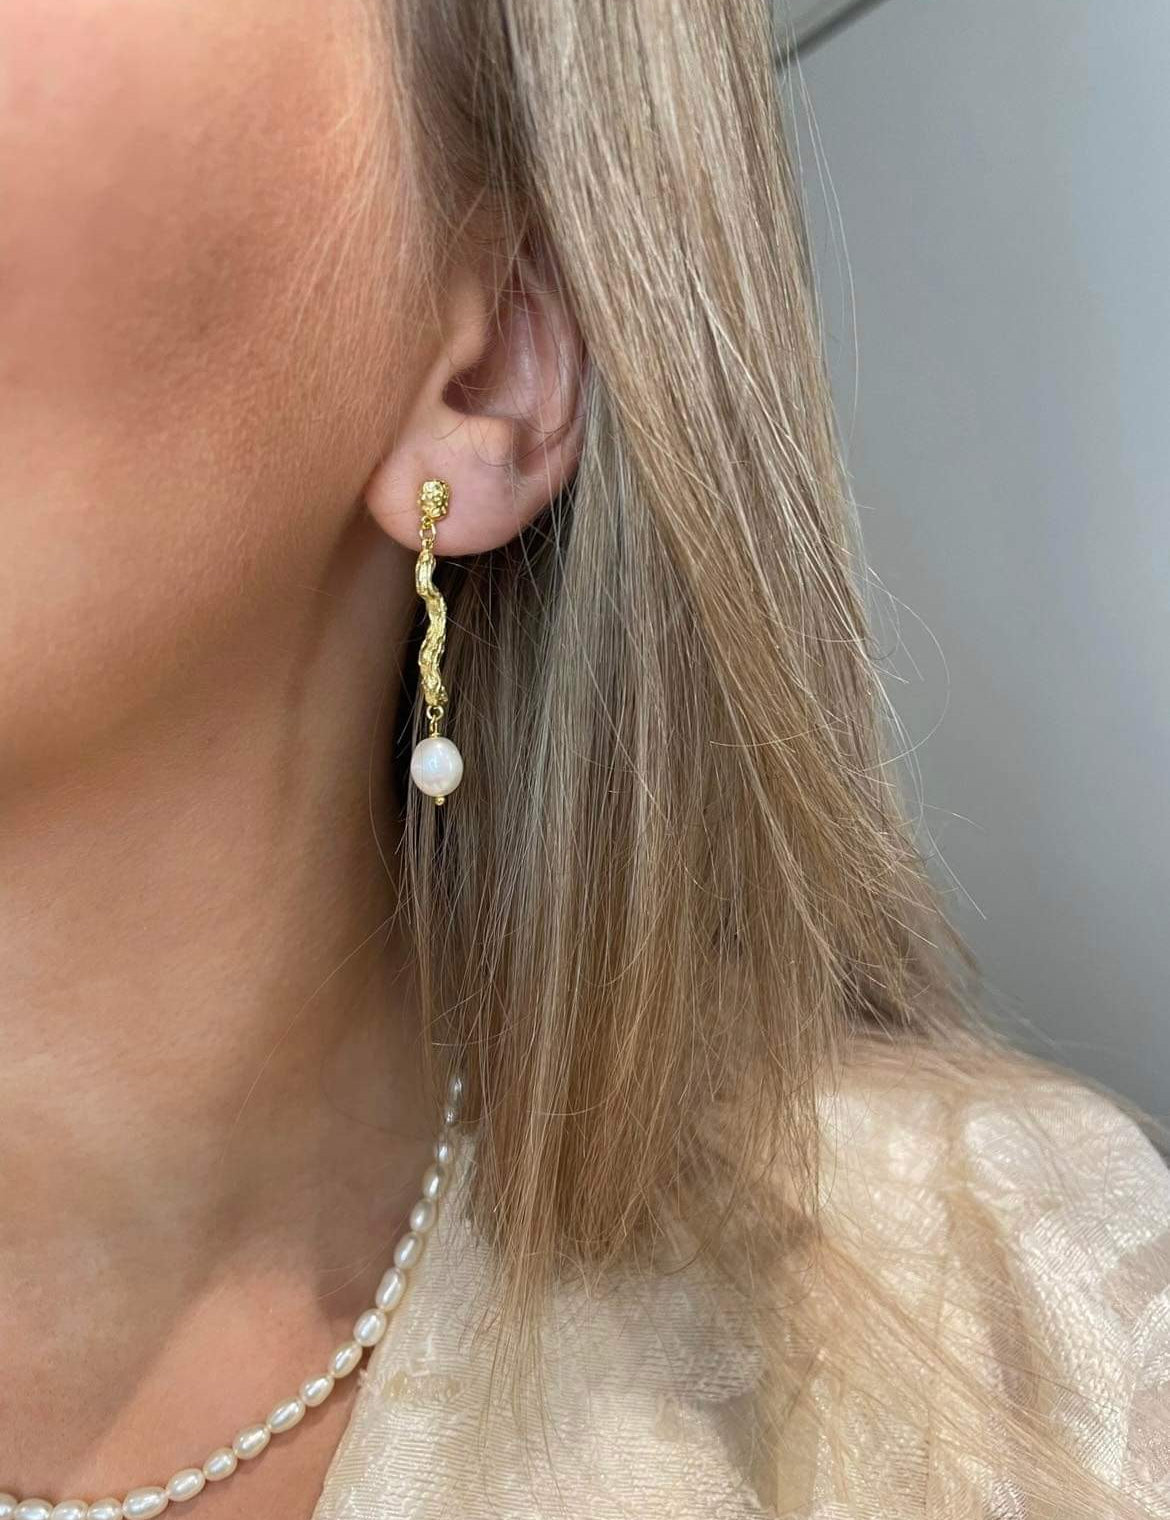 Adalina guld øreringe hænger smukt i øret med sin ørestik funktion. Et organisk mellemled forbinder ørestikken og den ovale ferskvandsperle. En smuk værtindegave eller smykkegave.